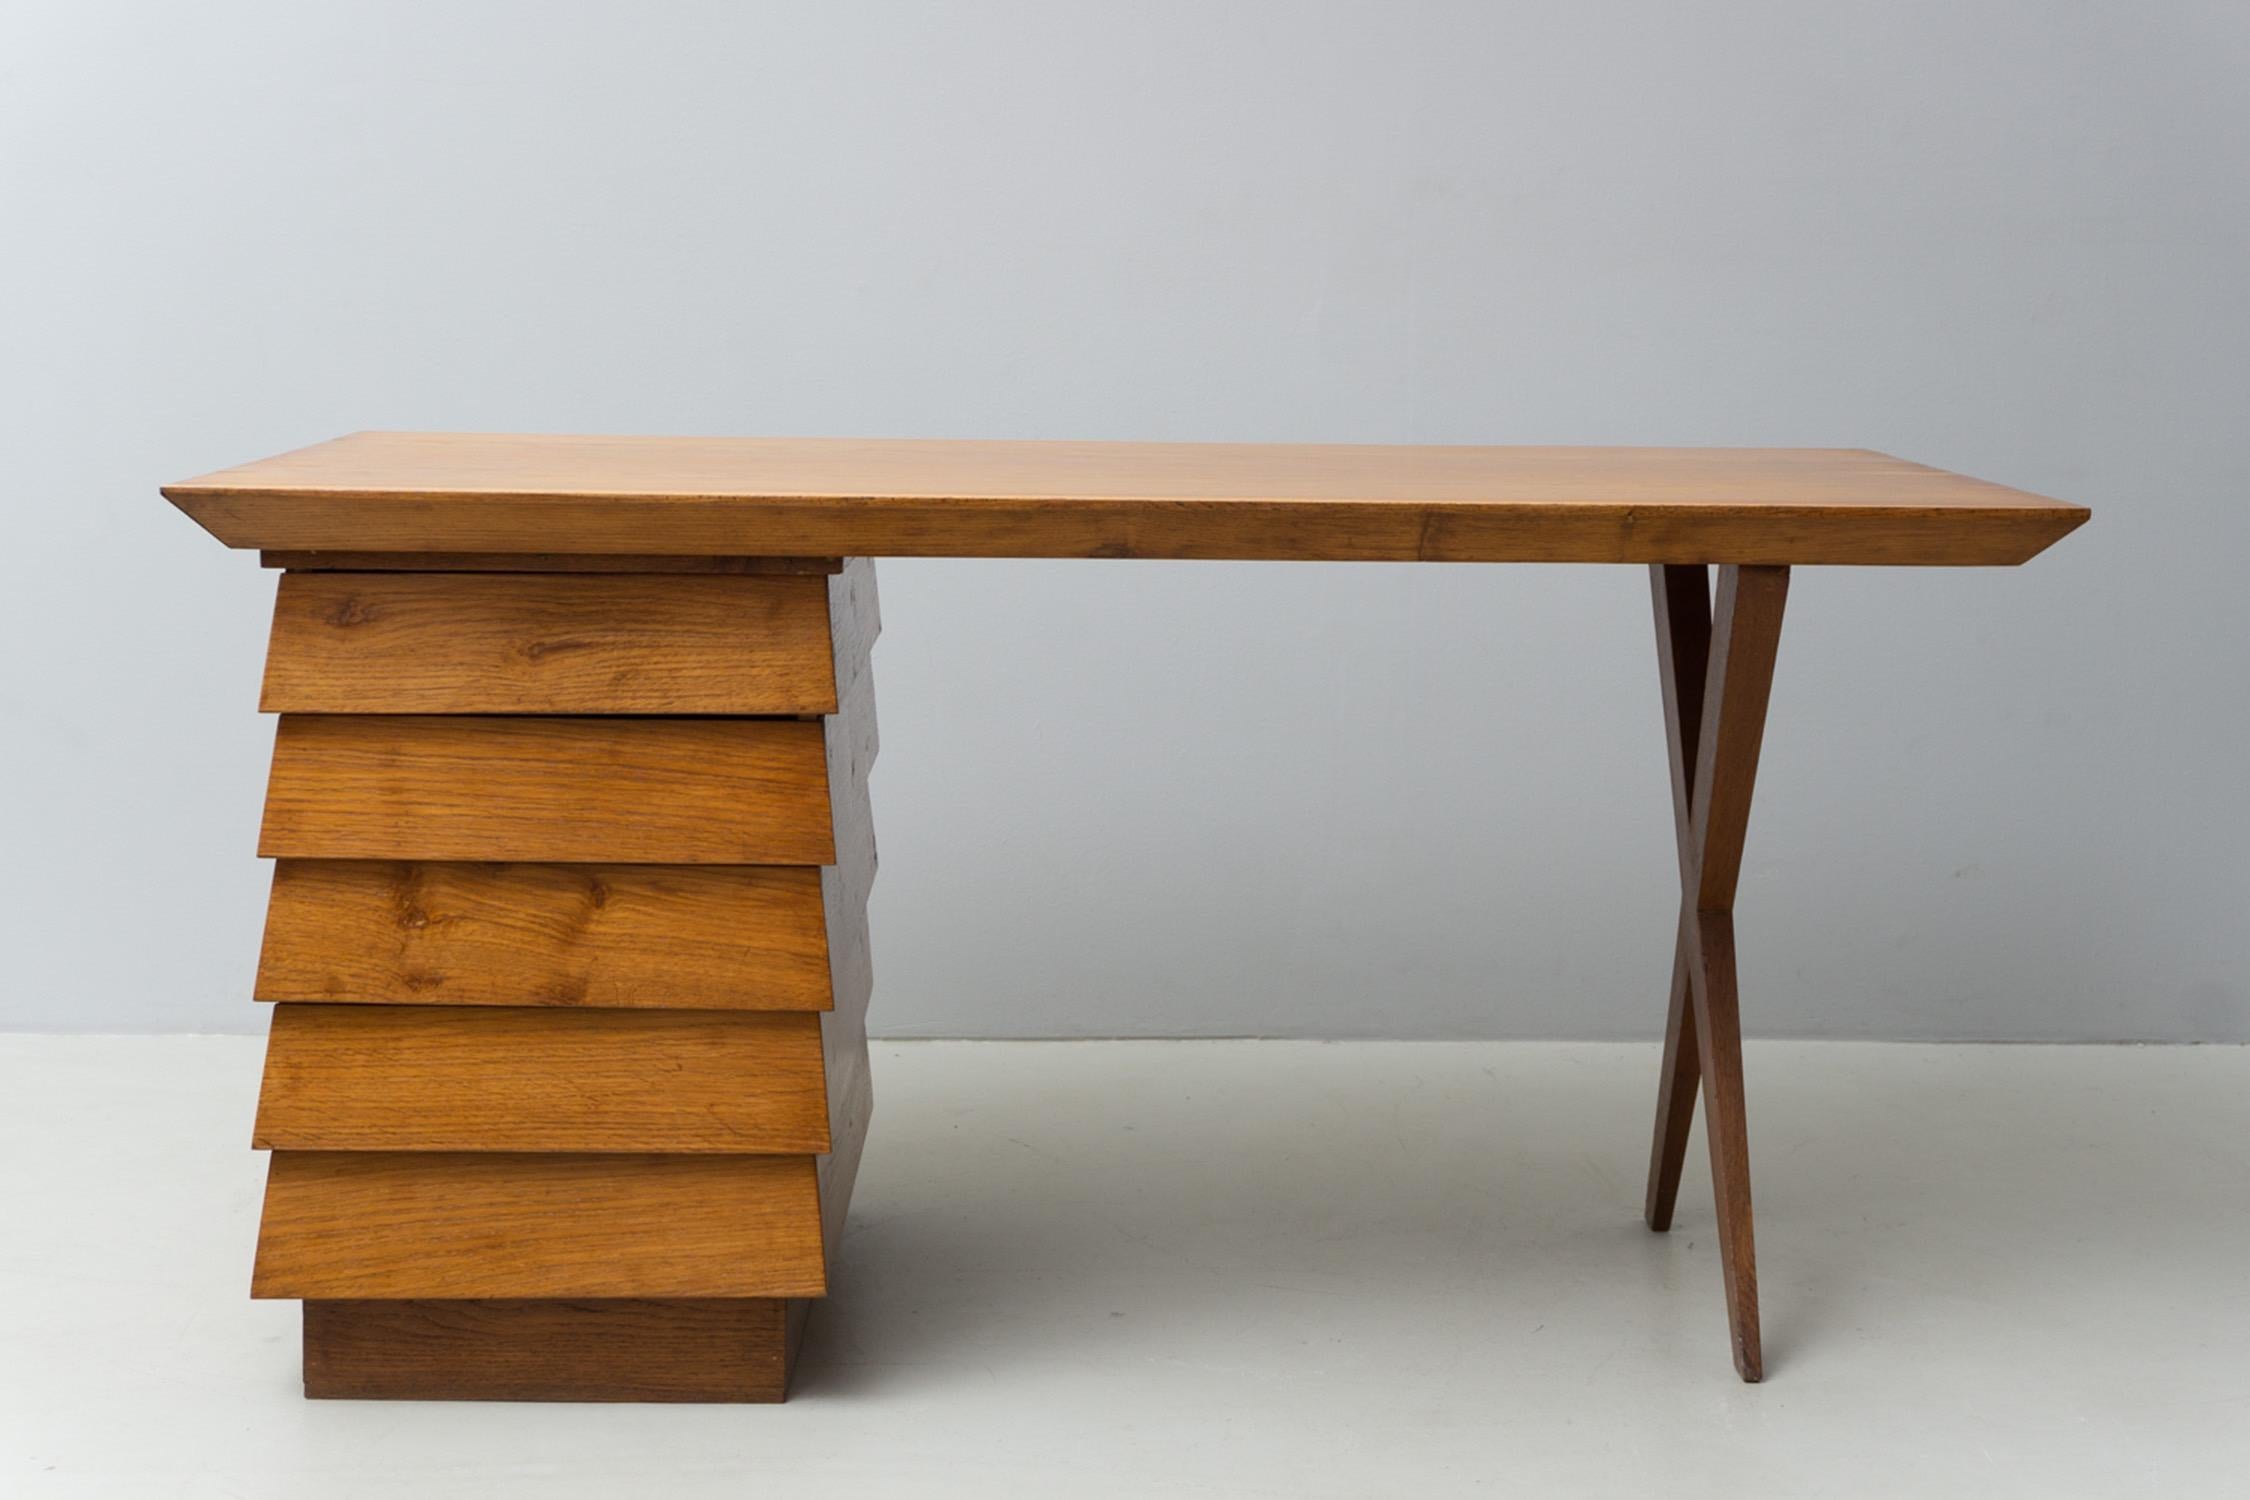 Außergewöhnlicher, skulpturaler Schreibtisch aus Nussbaumholz von Melchiorre Bega, ursprünglich 1940 entworfen.

Melchiorre Bega wurde 1898 in Caselle di Crevalcore (BO) geboren. Er schloss sein Studium der Architektur an der Akademie der Schönen